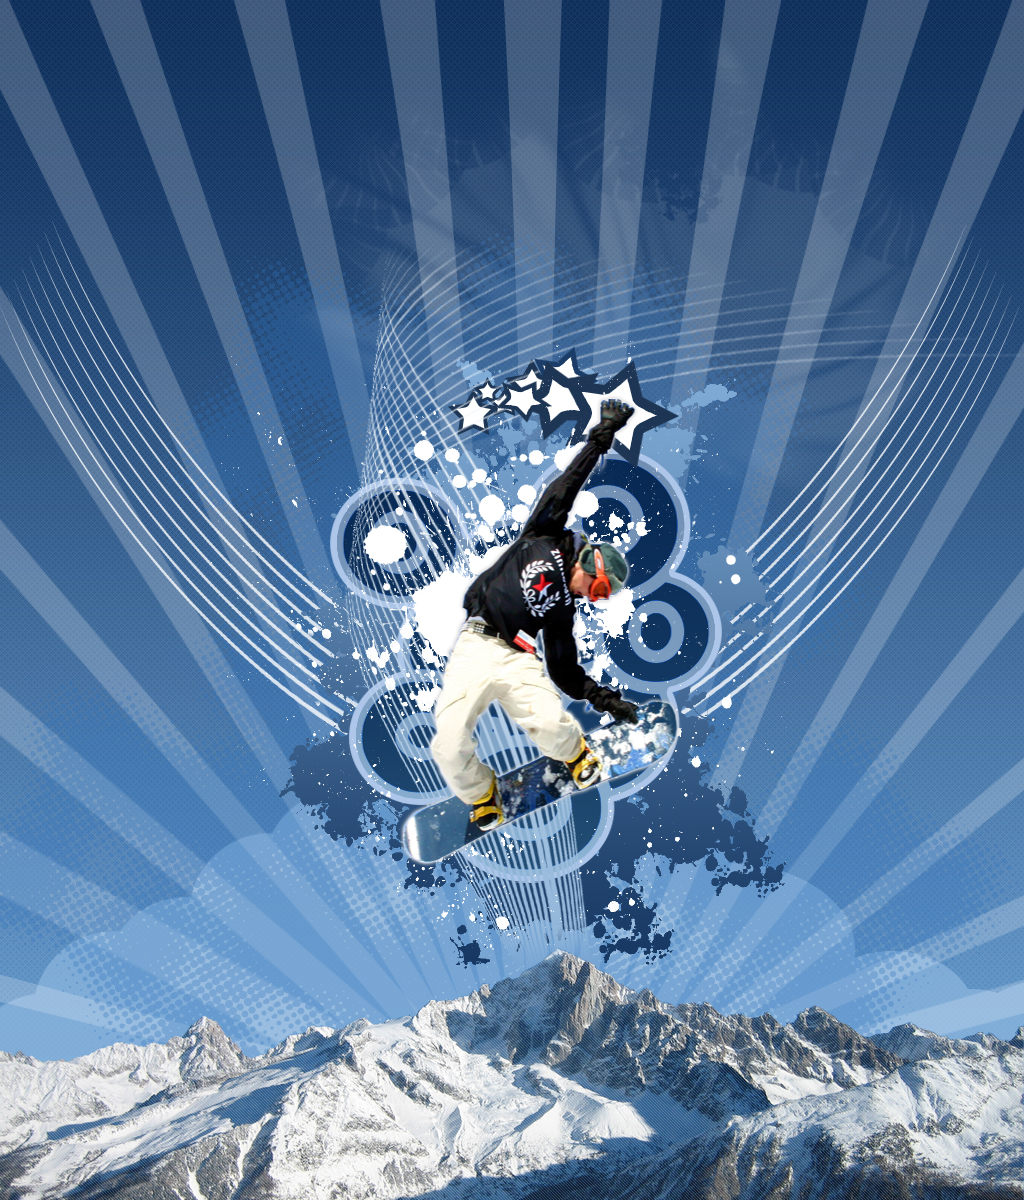 Cool Snowboarding Wallpapers - WallpaperSafari